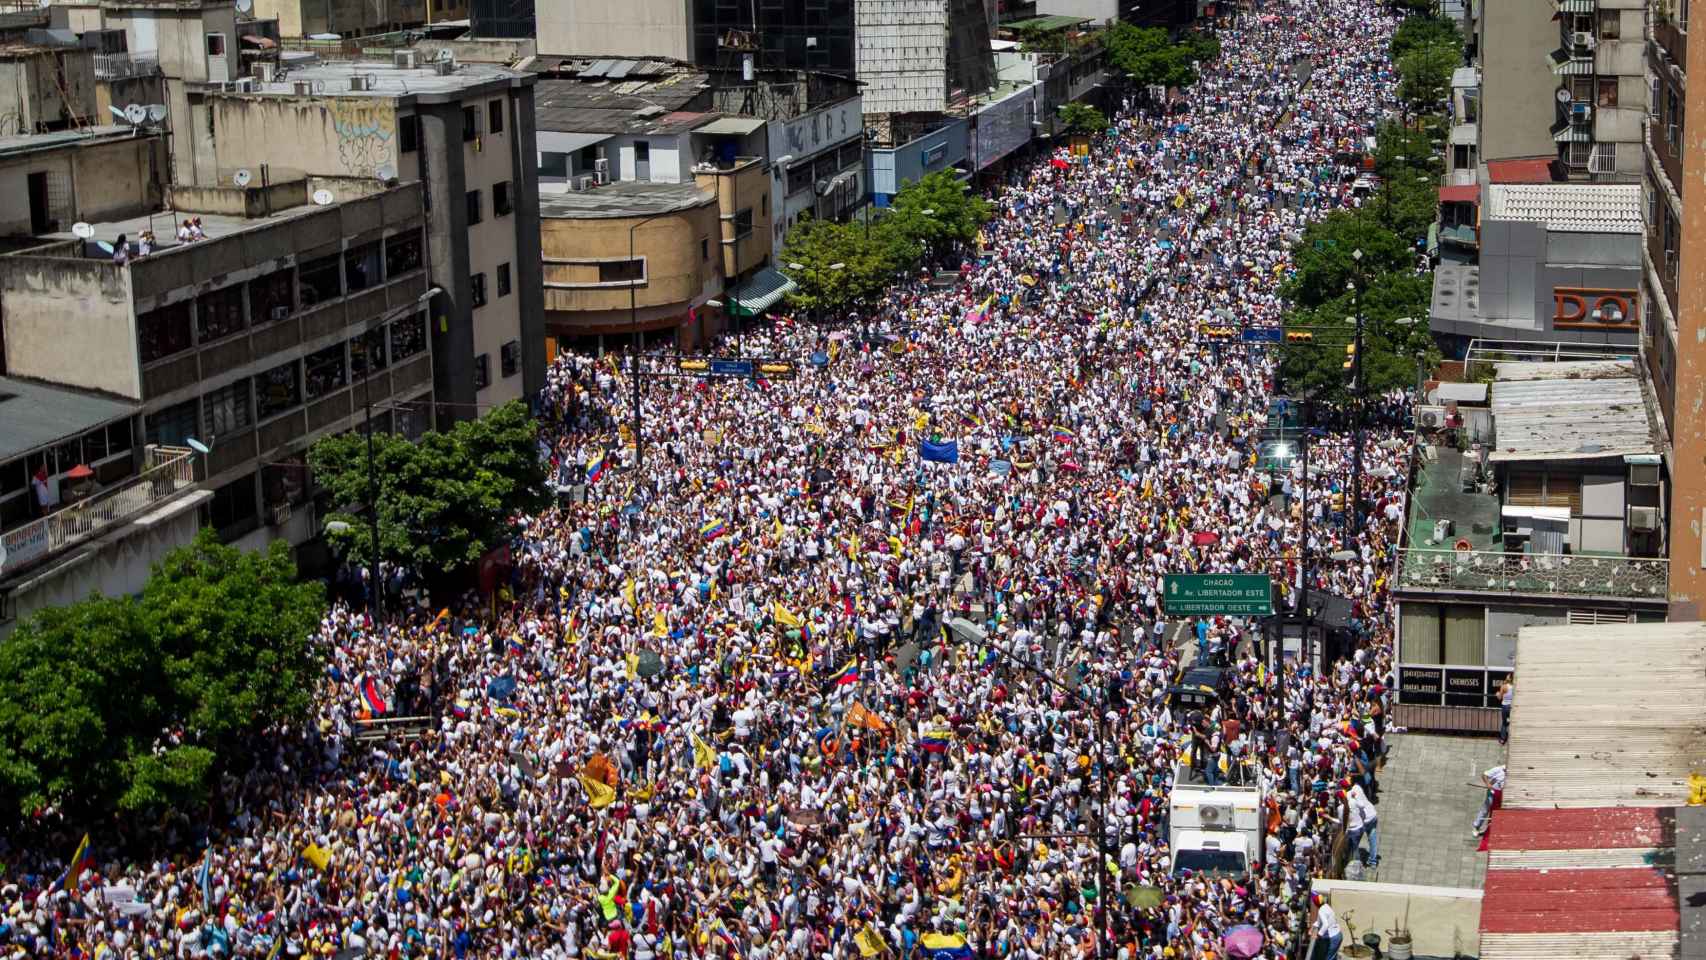 La marcha opositora en Caracas, en imágenes